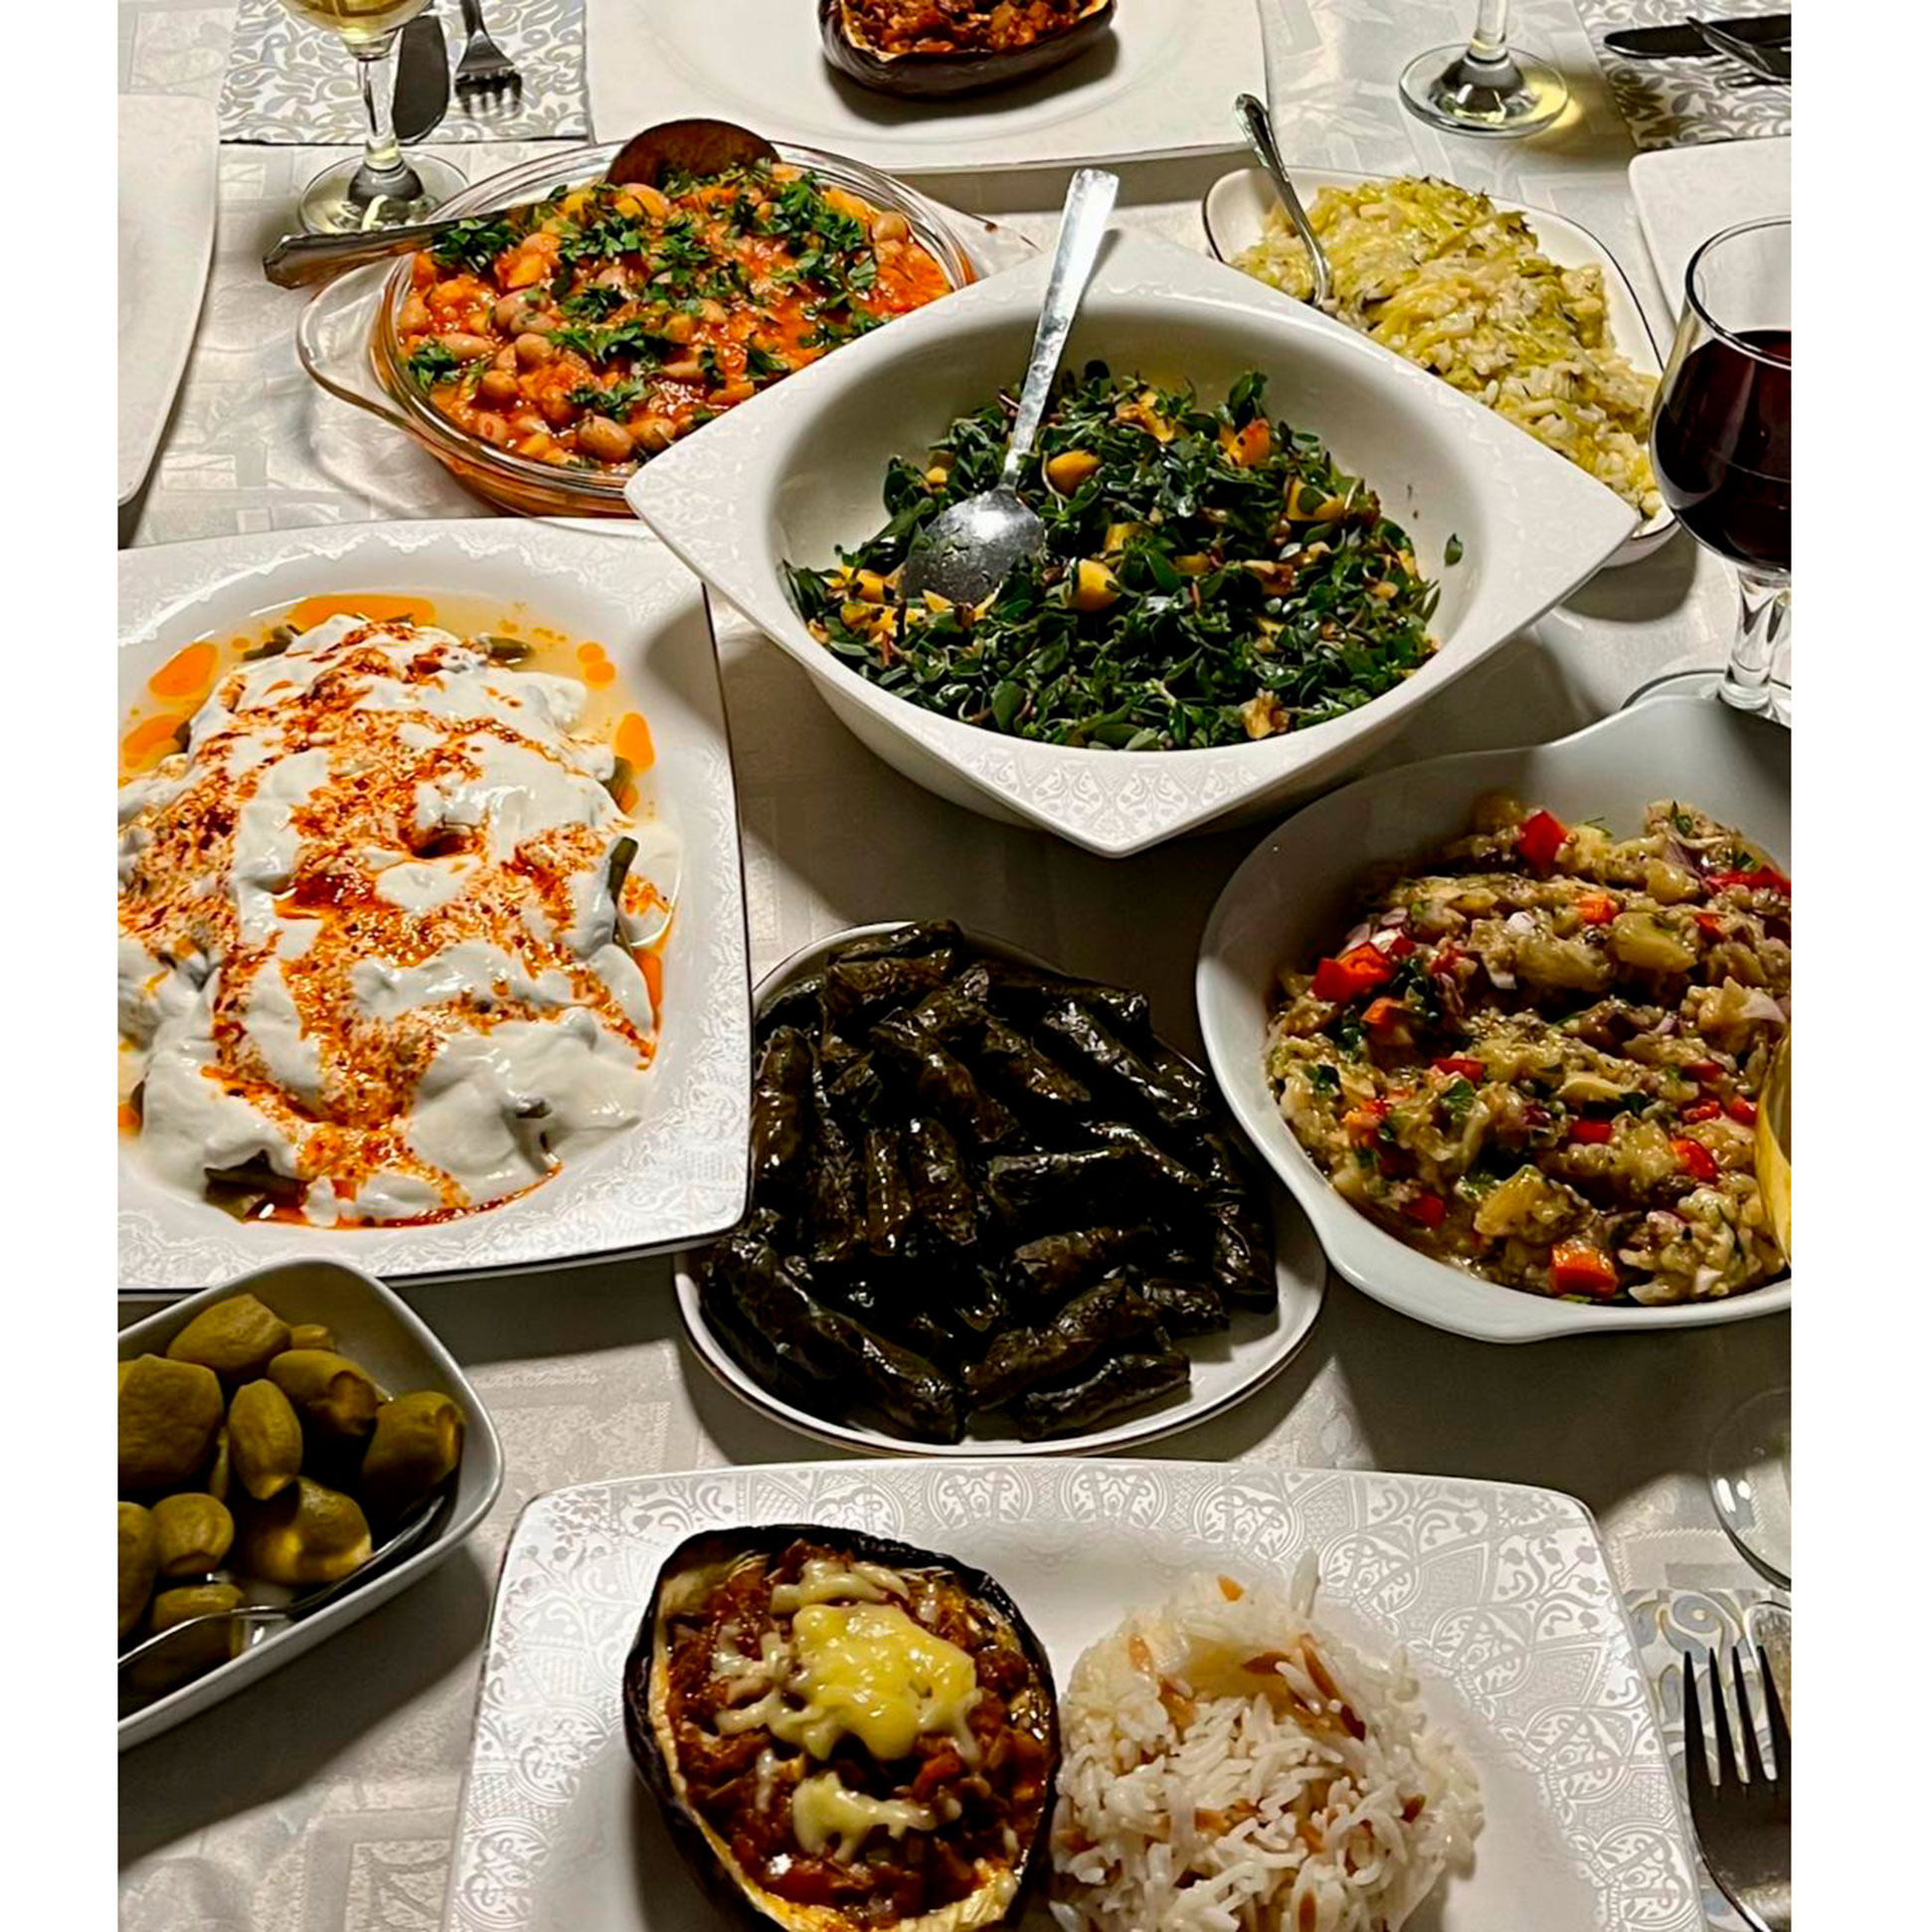 La comida turca varía según la región, pero en Estambul se encuentra todo